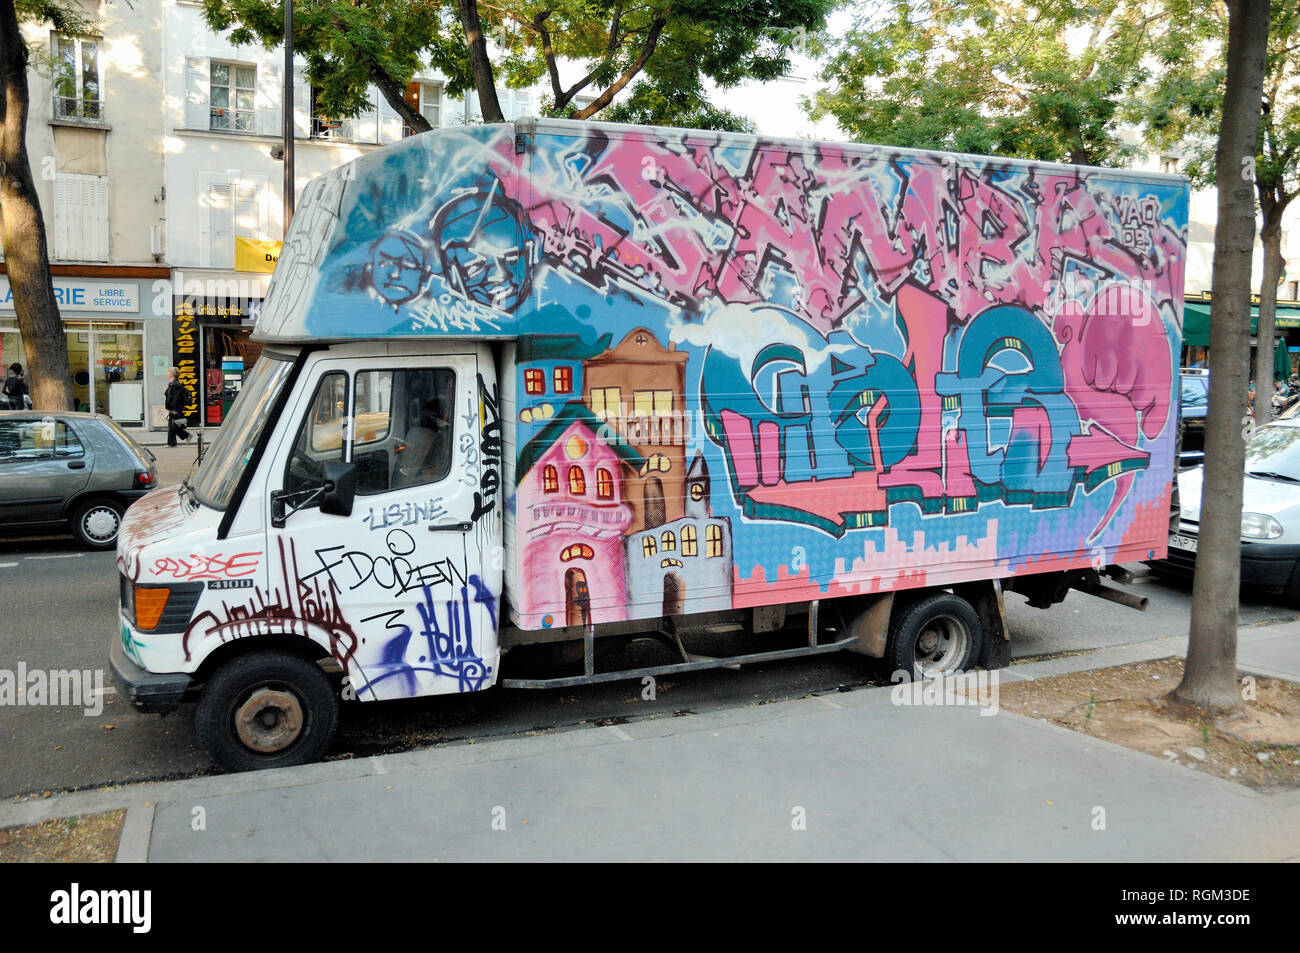 Blanco Graffiti-Covered camioneta estacionada en calle París Francia Foto de stock